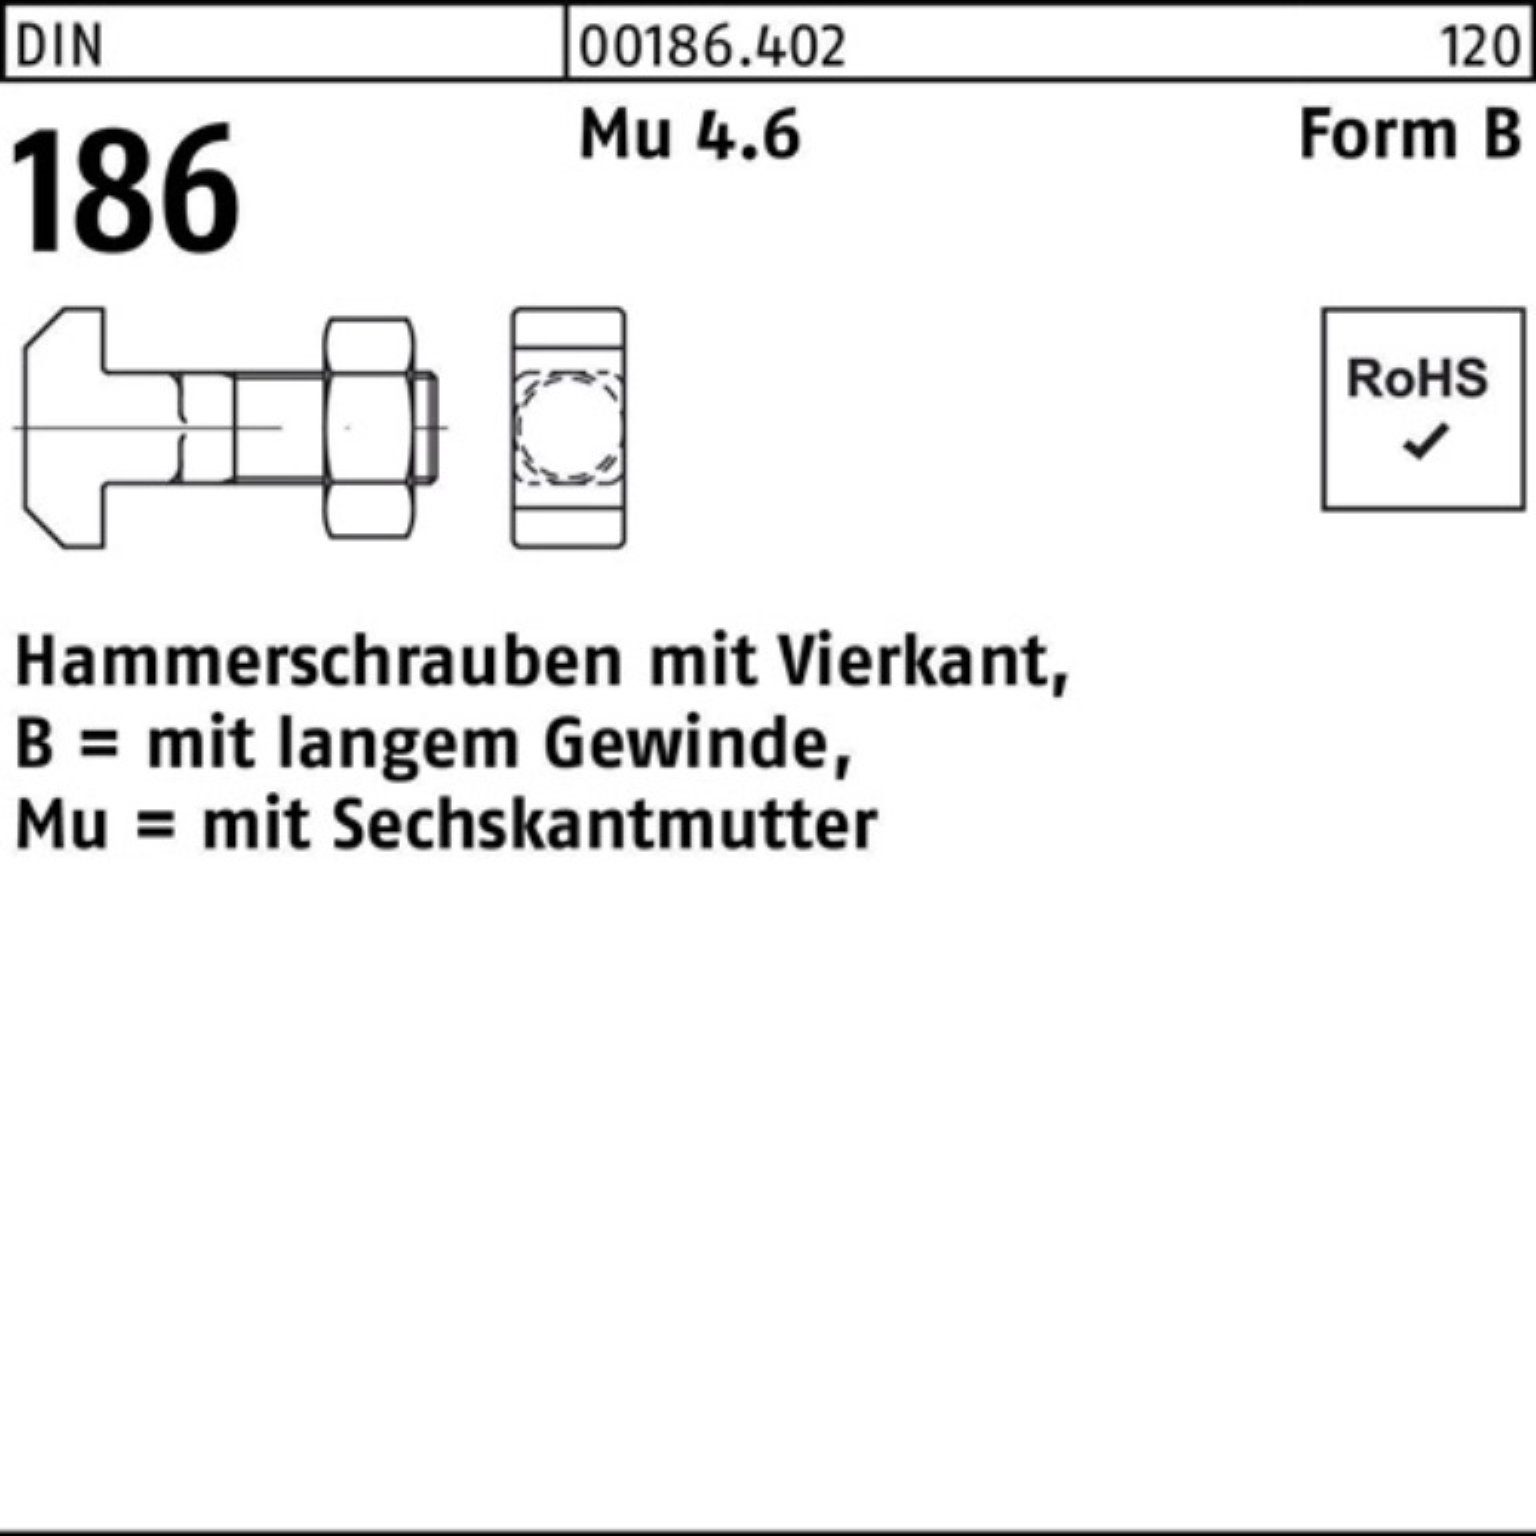 FormB BM 6-ktmutter 10x 186 Vierkant Hammerschraube 25 100er Schraube Reyher DIN Pack